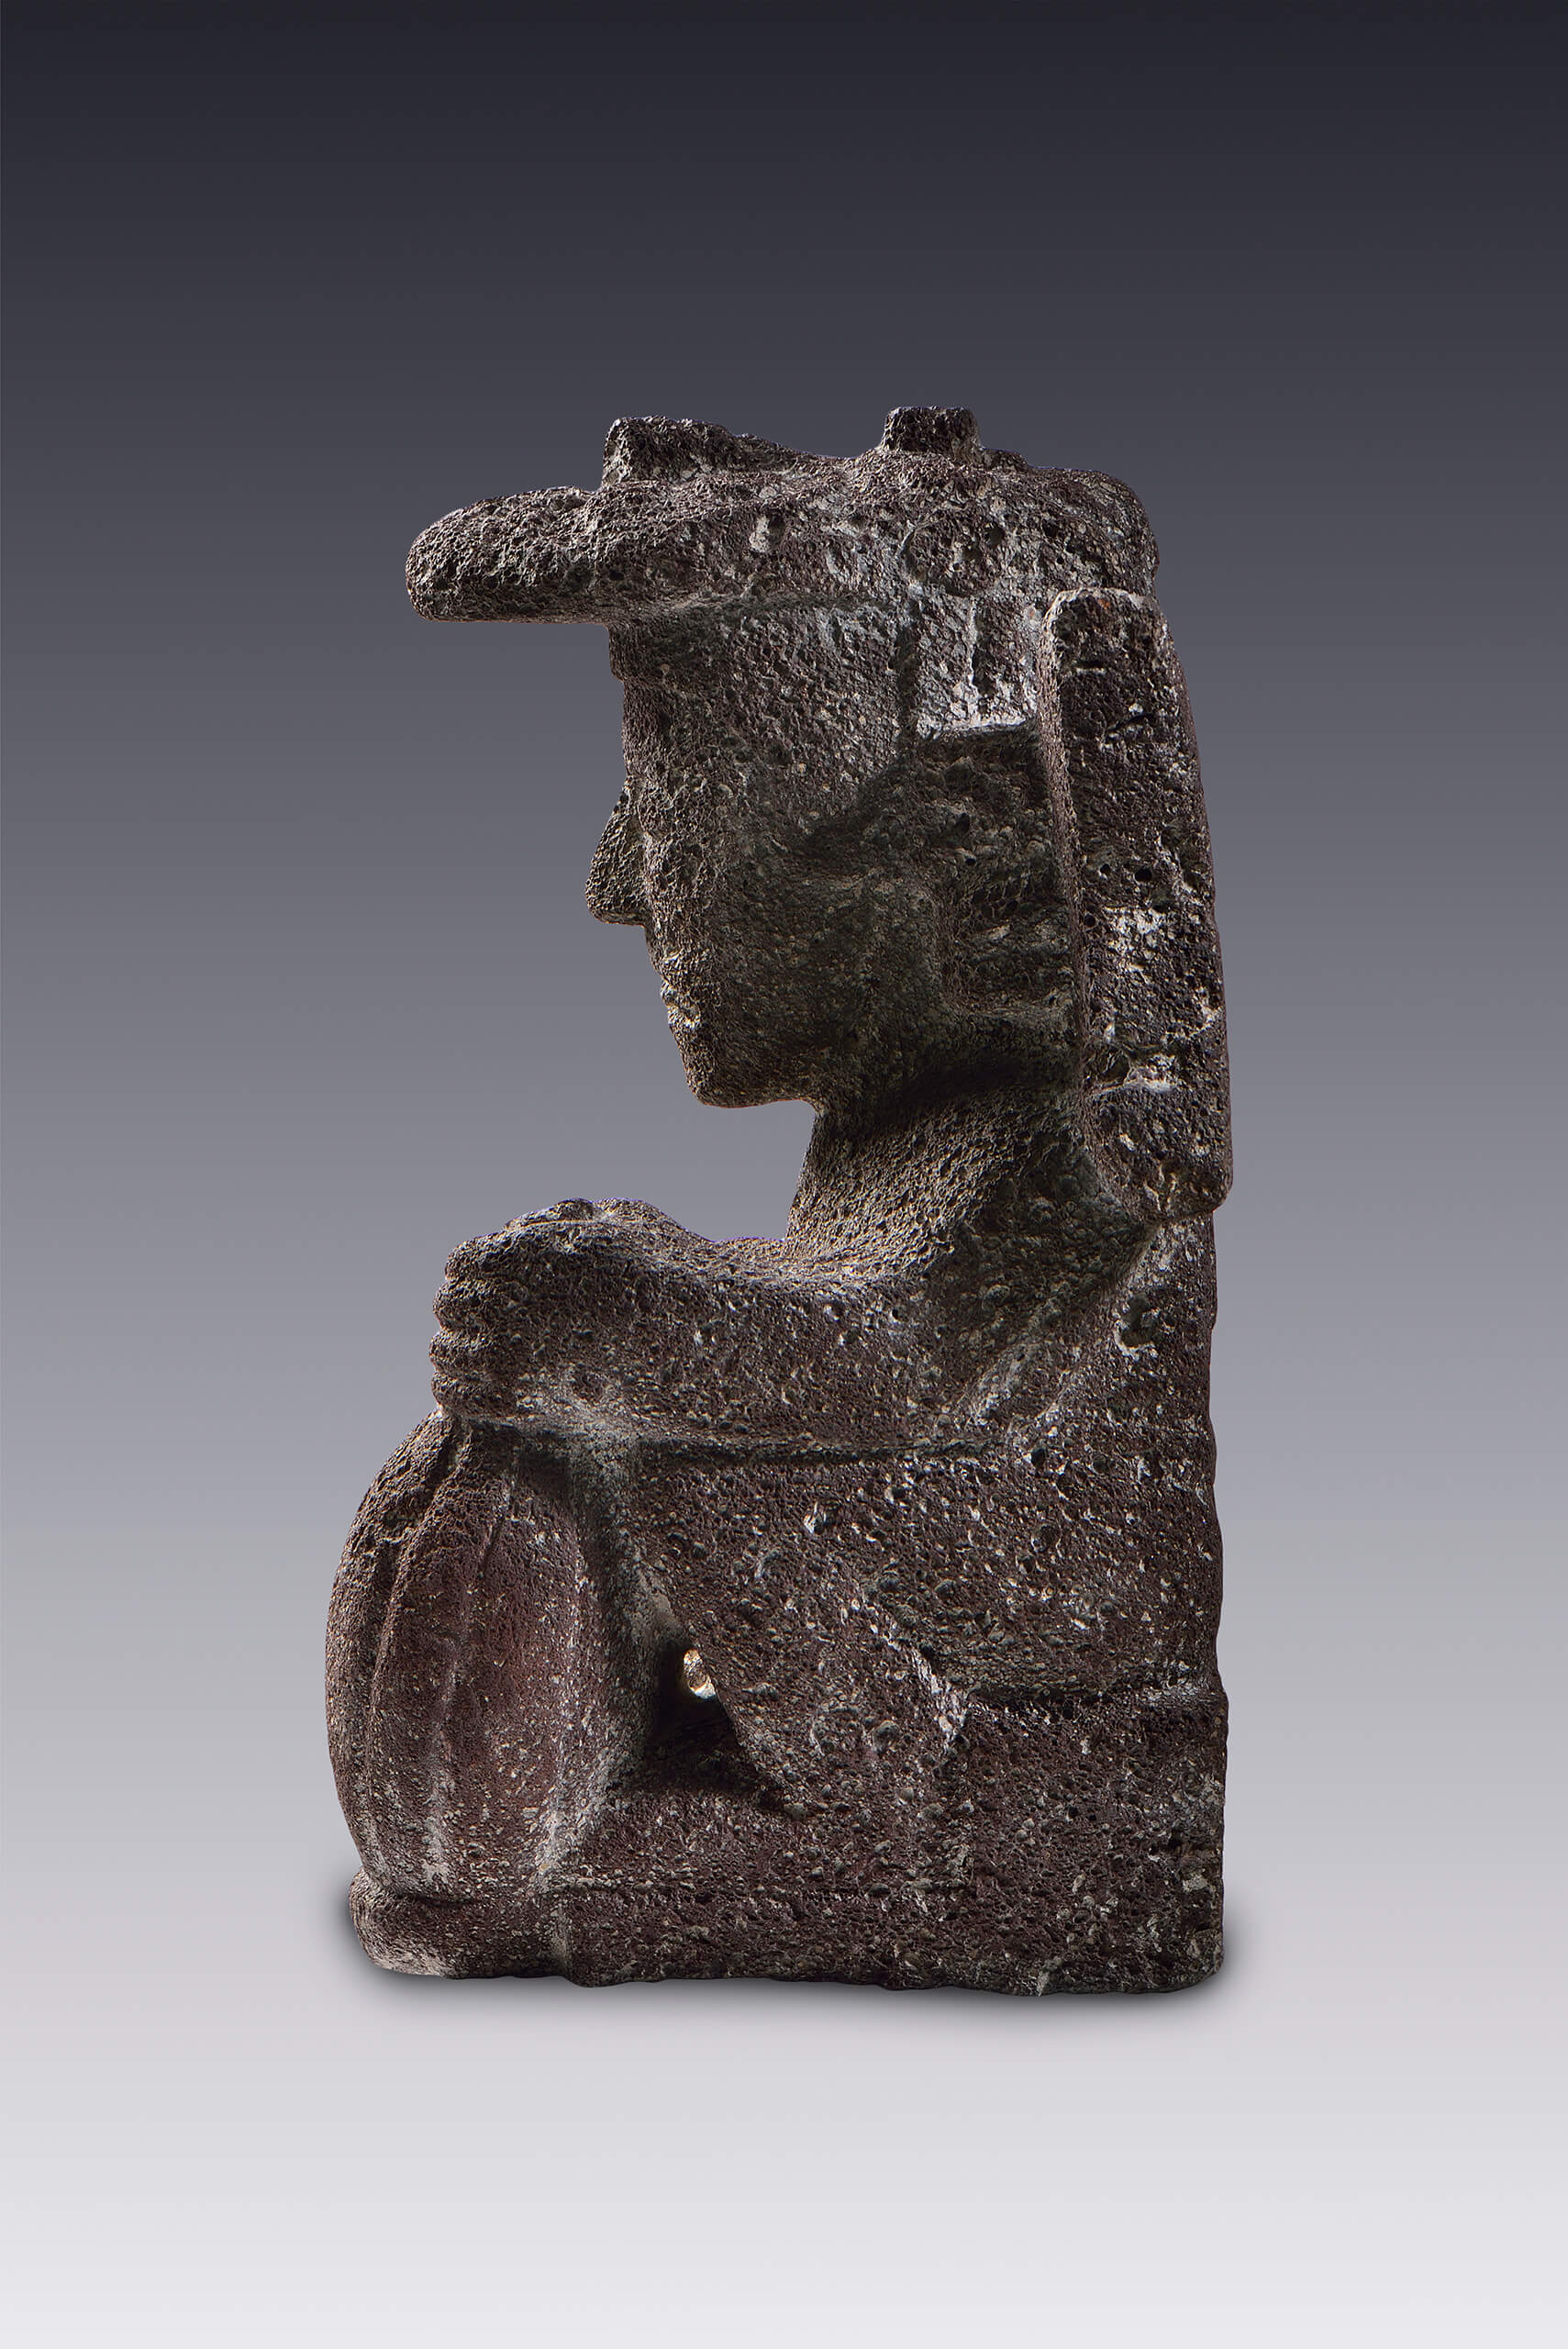 Hombre que sujeta una calabaza y porta máscara sobre la cabeza | El México antiguo. Salas de Arte Prehispánico | Museo Amparo, Puebla